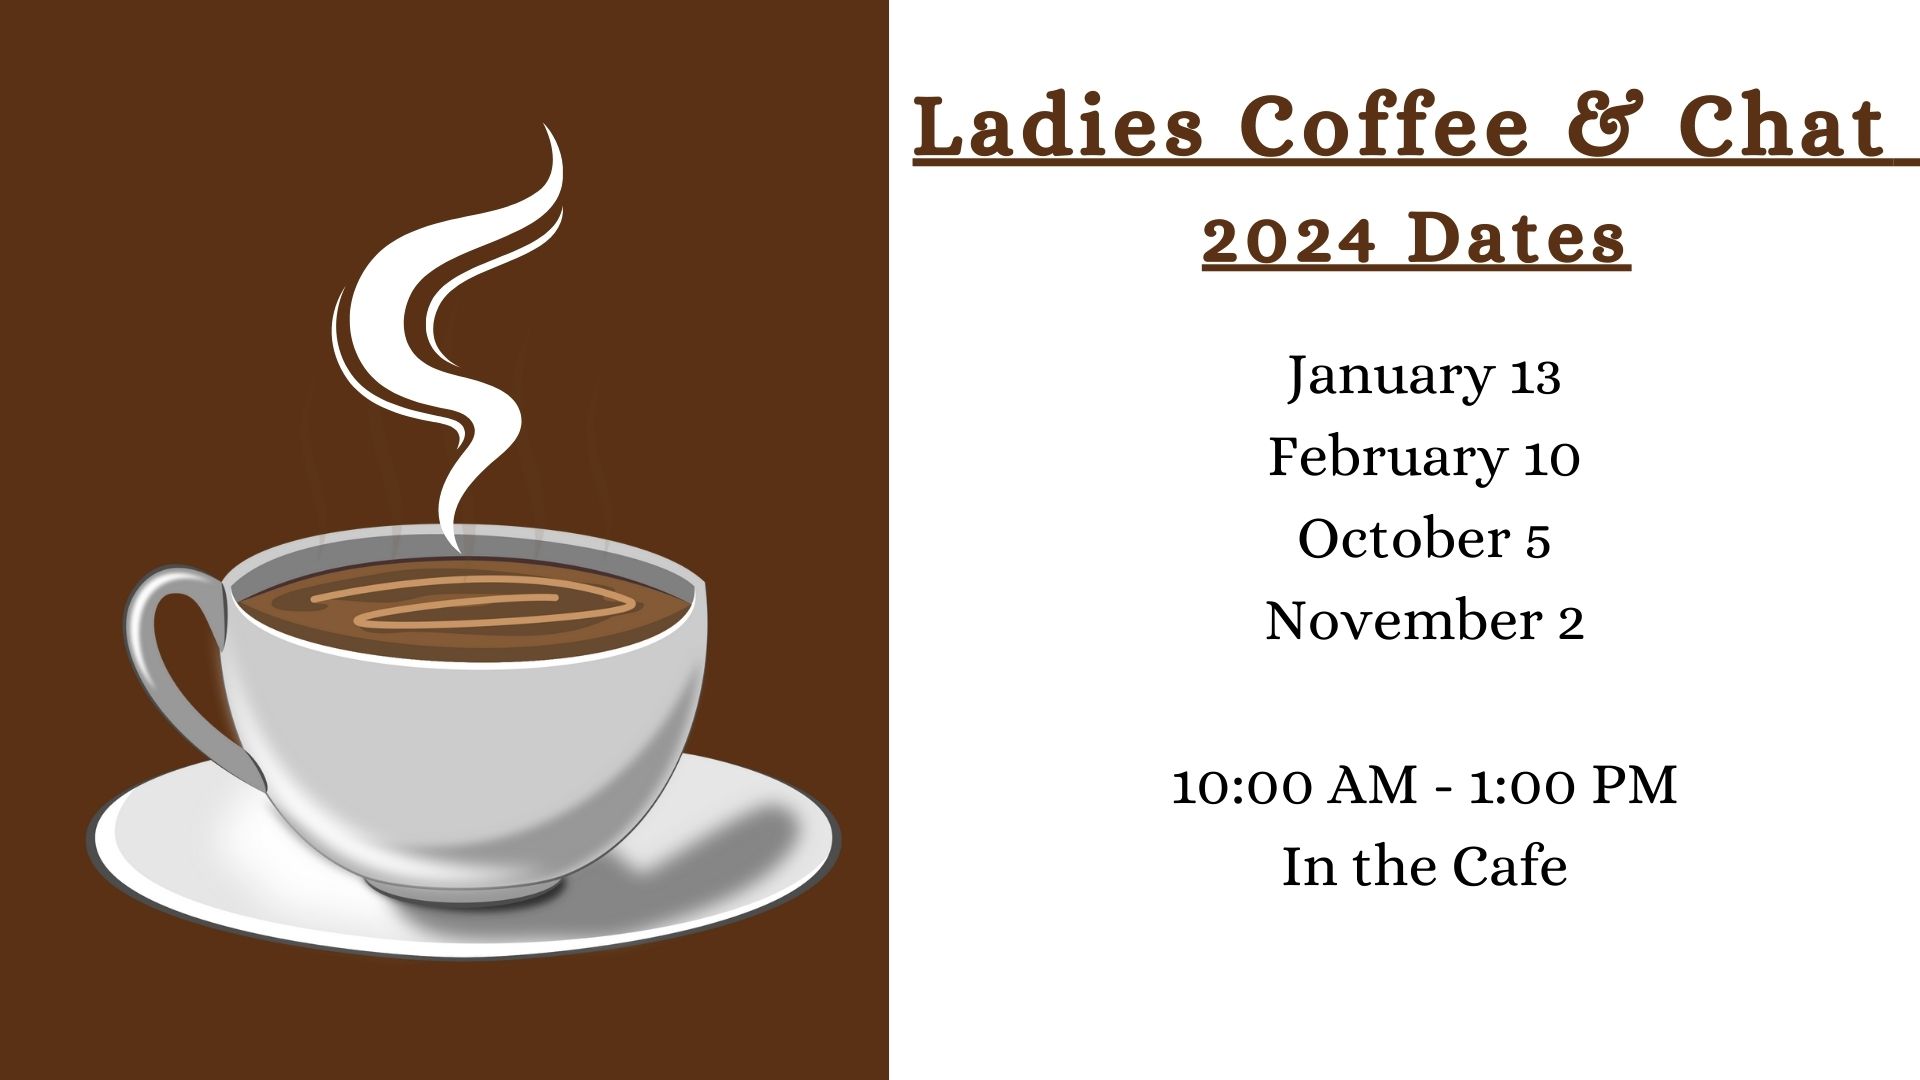 Ladies Coffee & Chat Dates.jpg